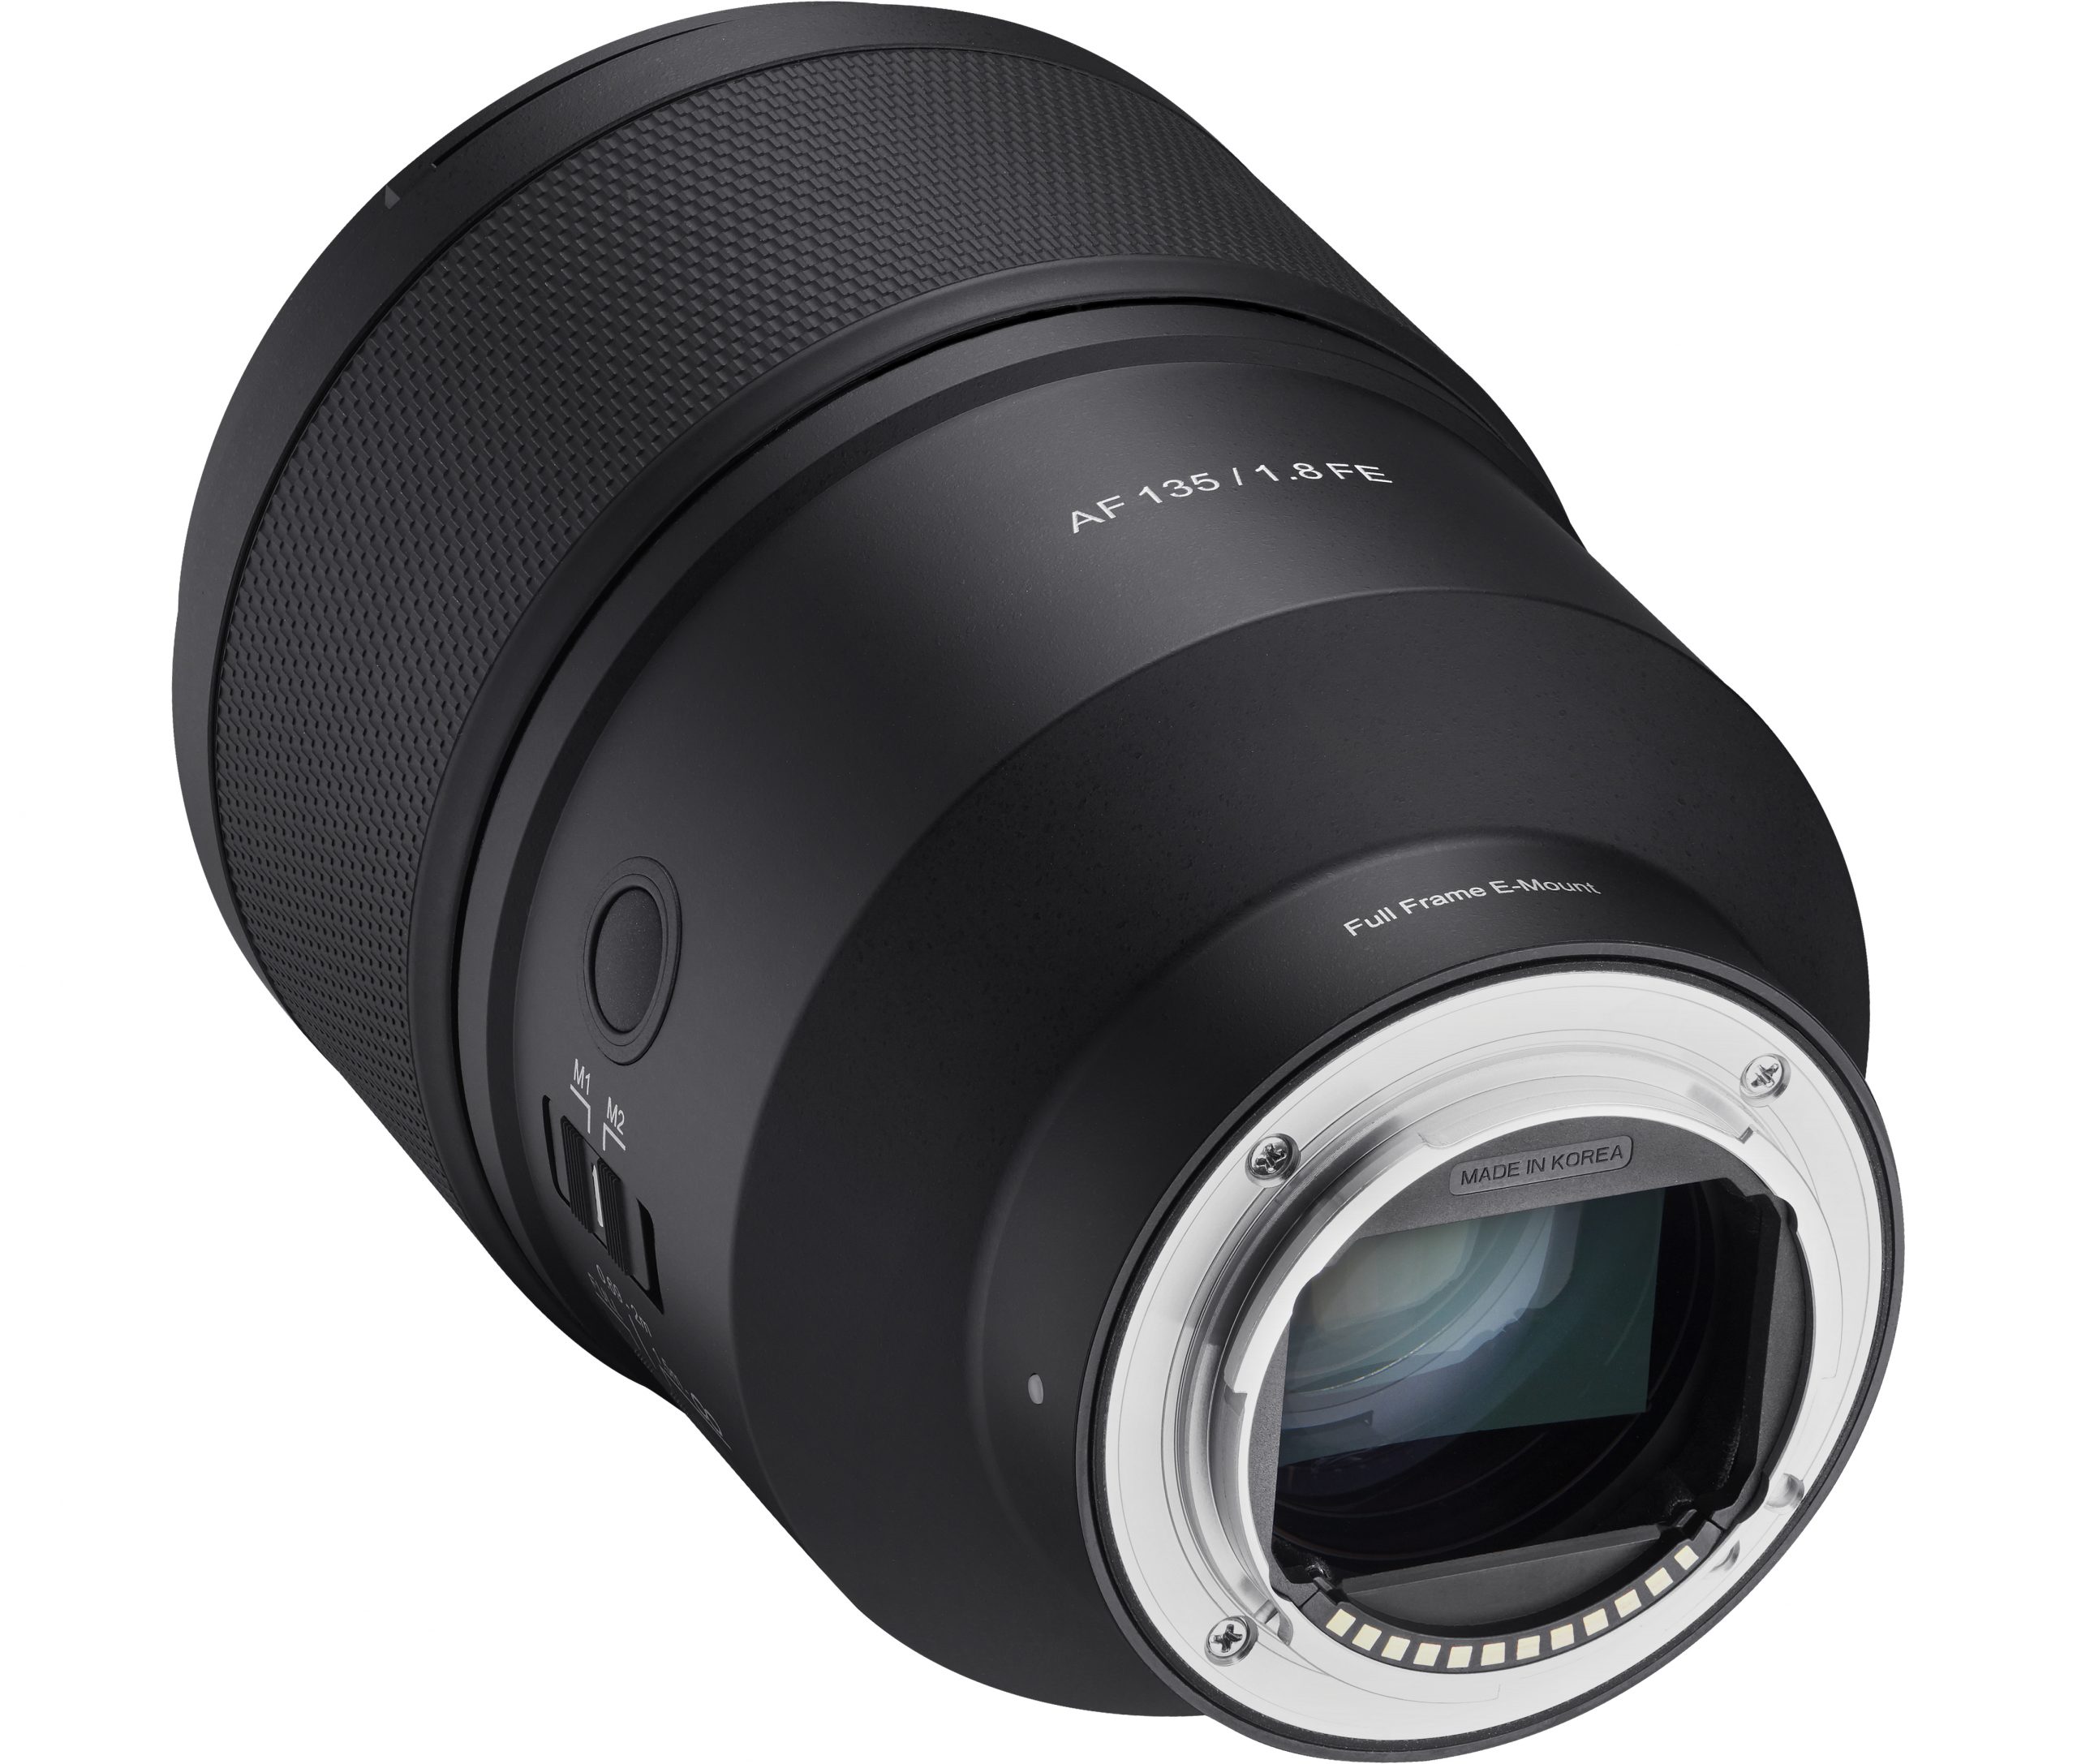 Samyang ra mắt ống kính AF 135mm F1.8 dành cho máy ảnh Sony ngàm E